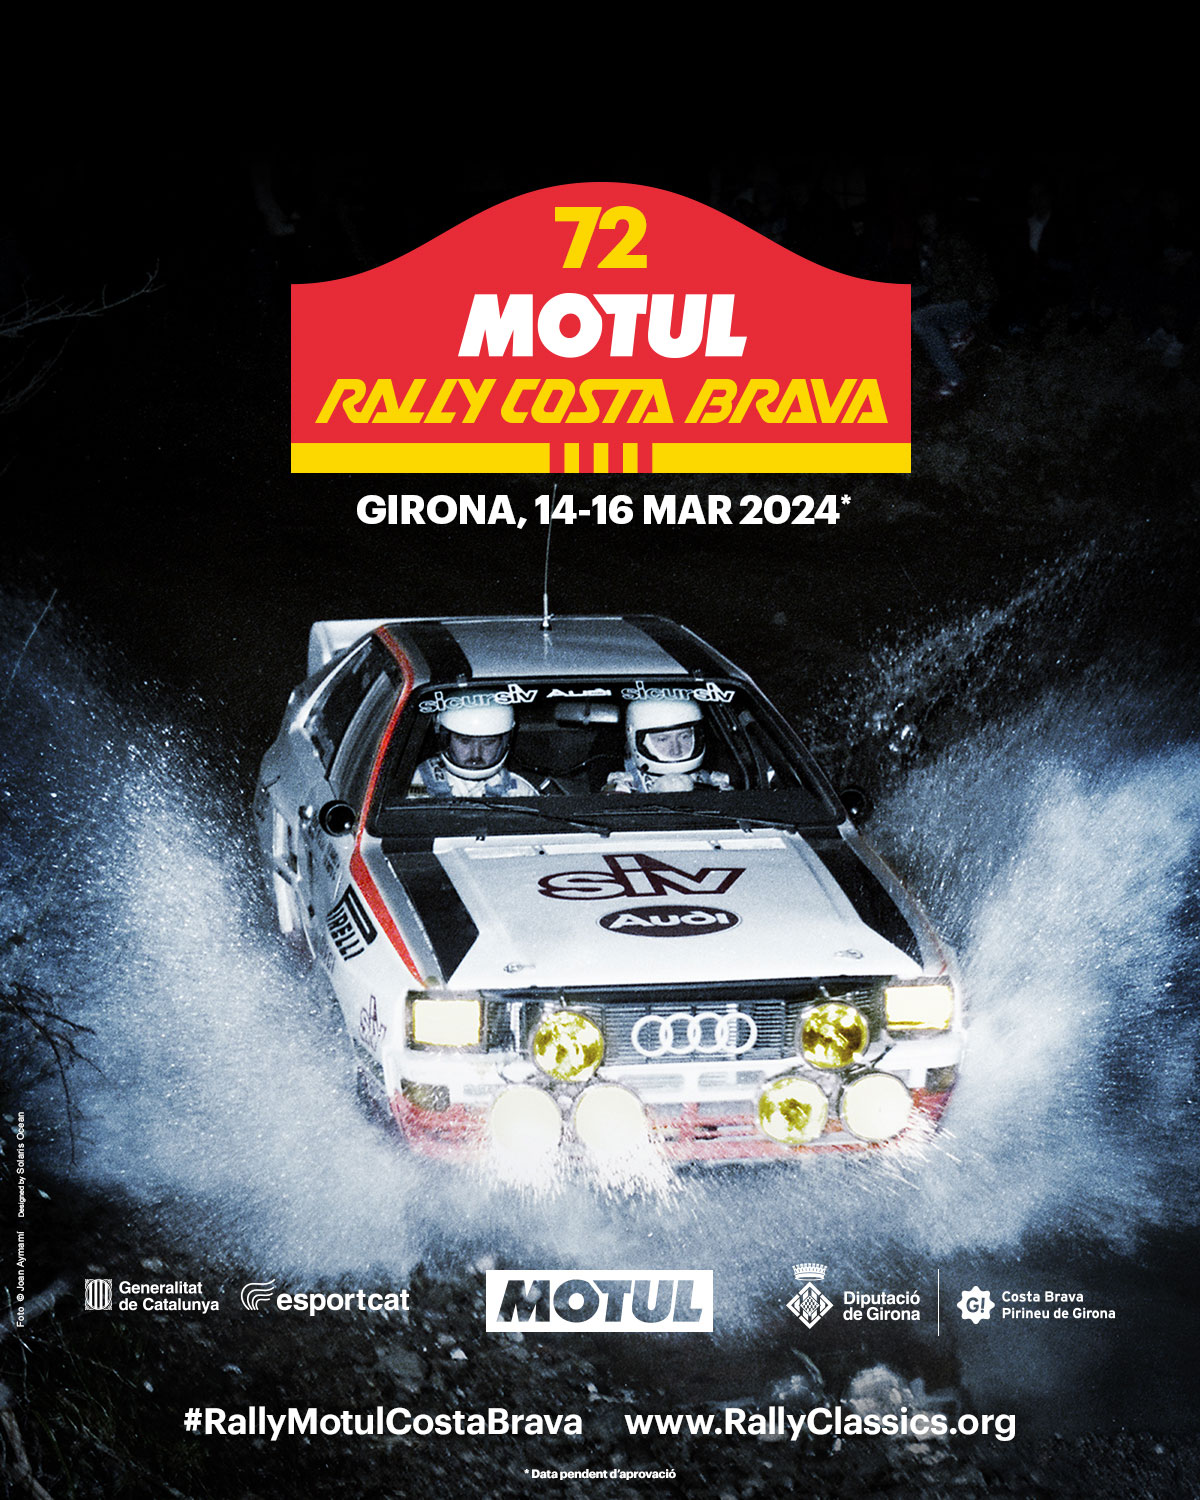 Rallye d'Espagne 2019 : Rallye mixte, sentiments partagés !